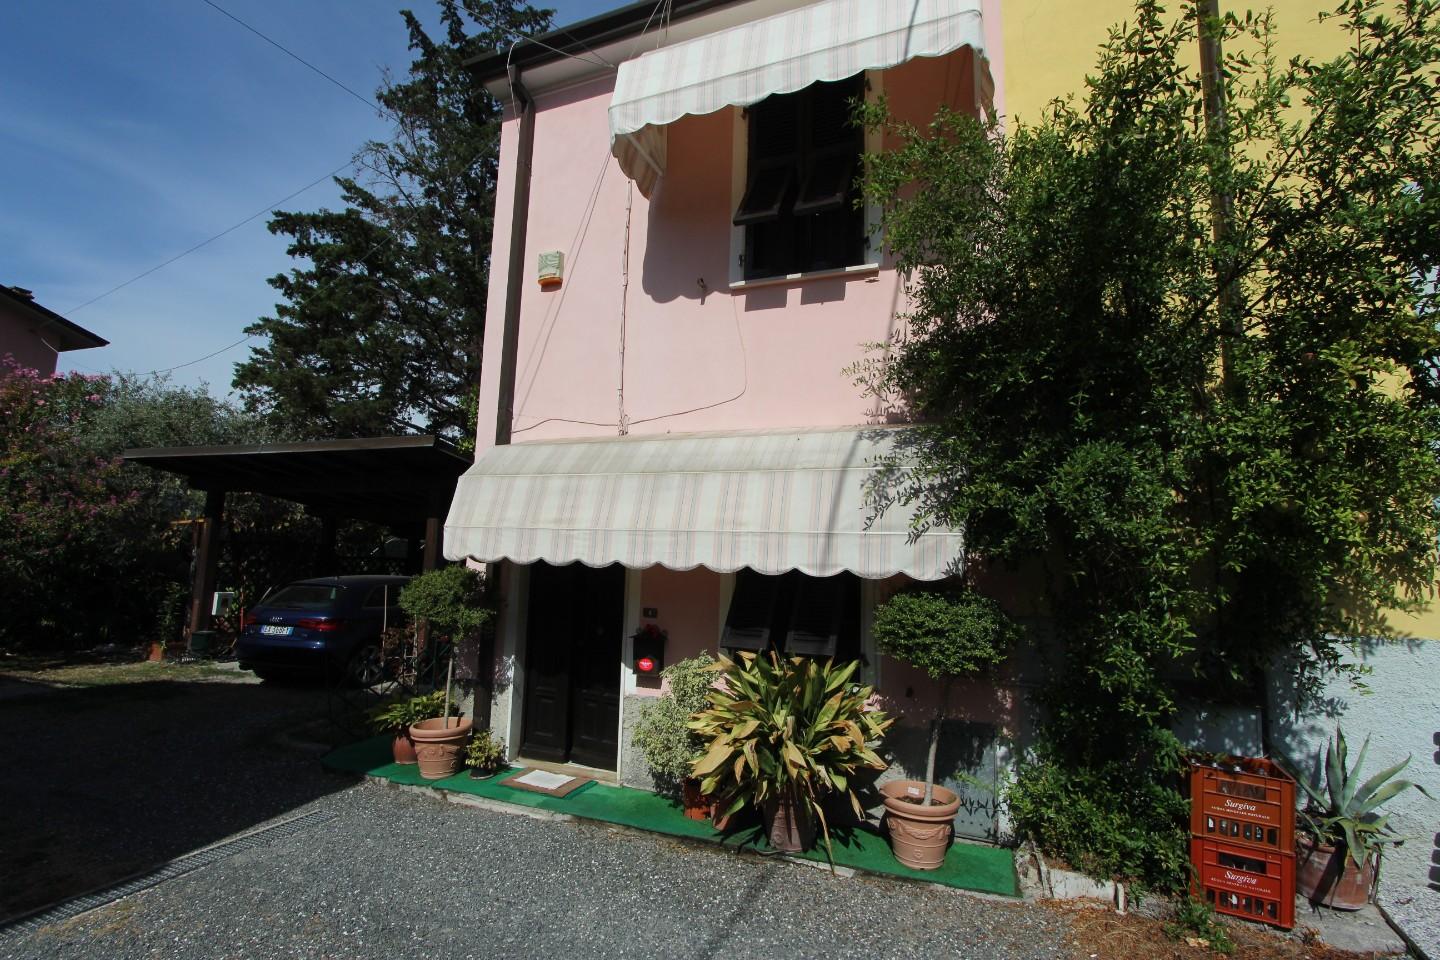 Casa indipendente in vendita a Sarzana